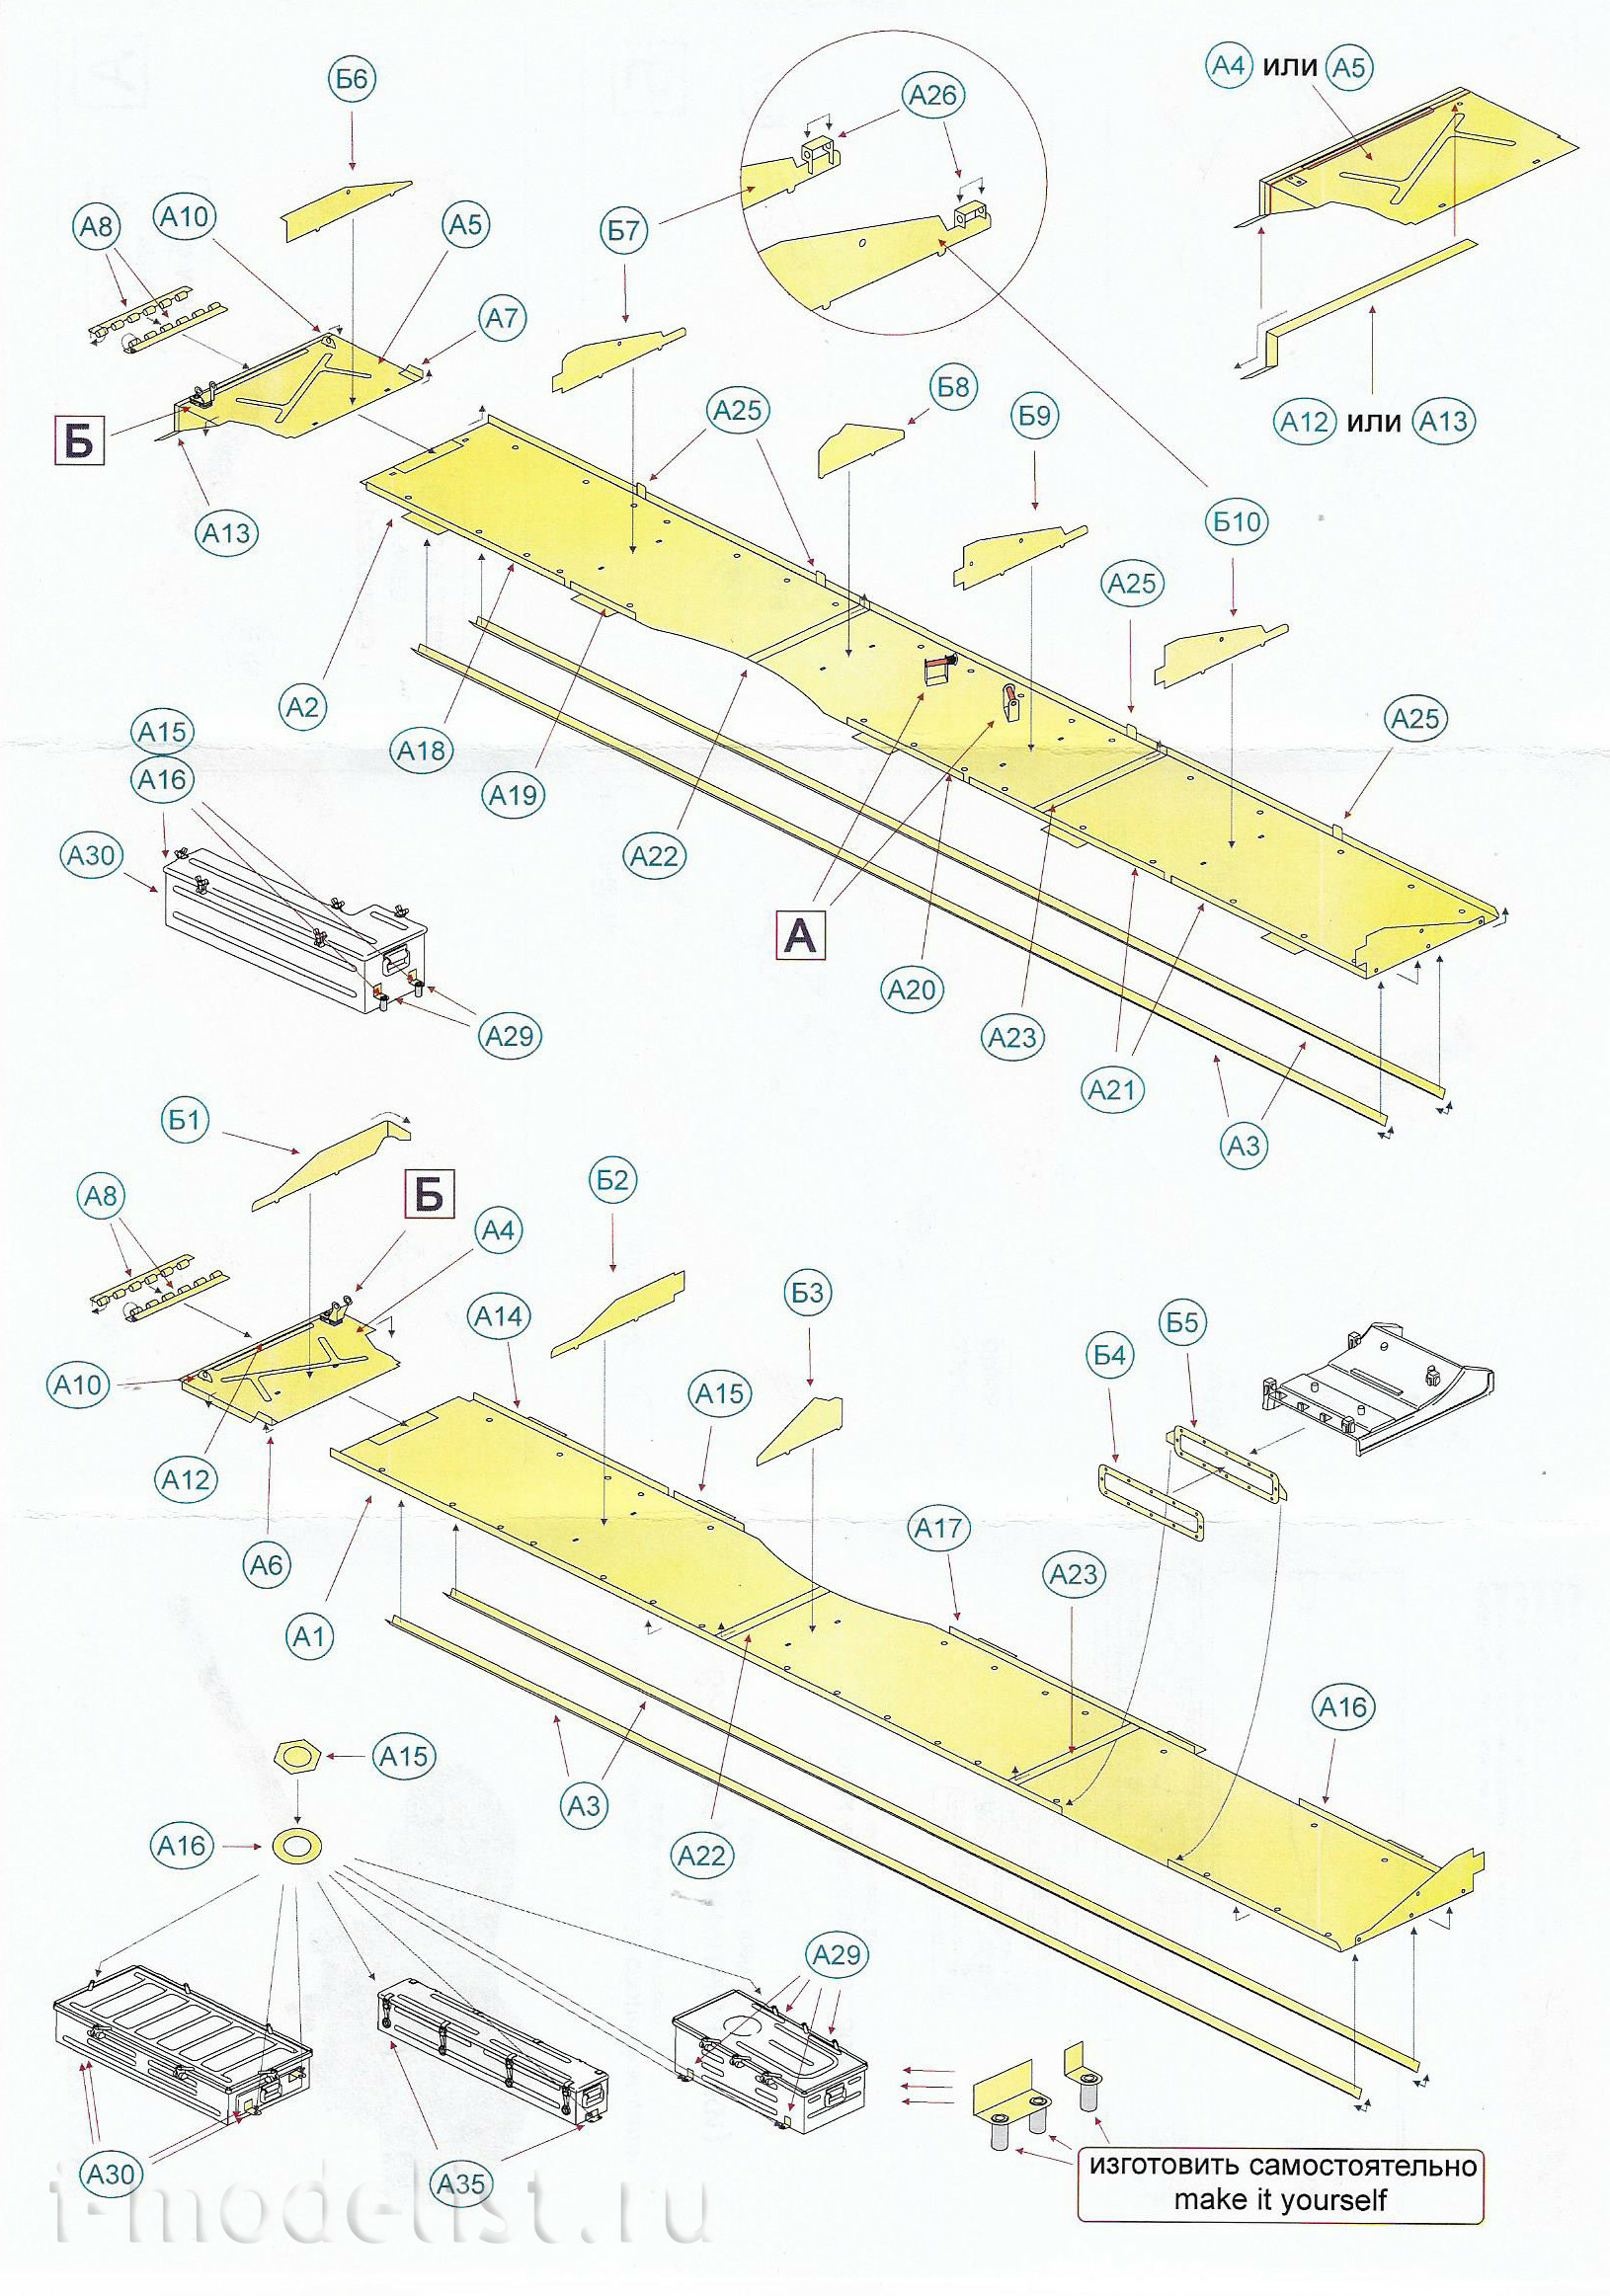 035425 Microdesign 1/35 Set of overhead shelves for T-62